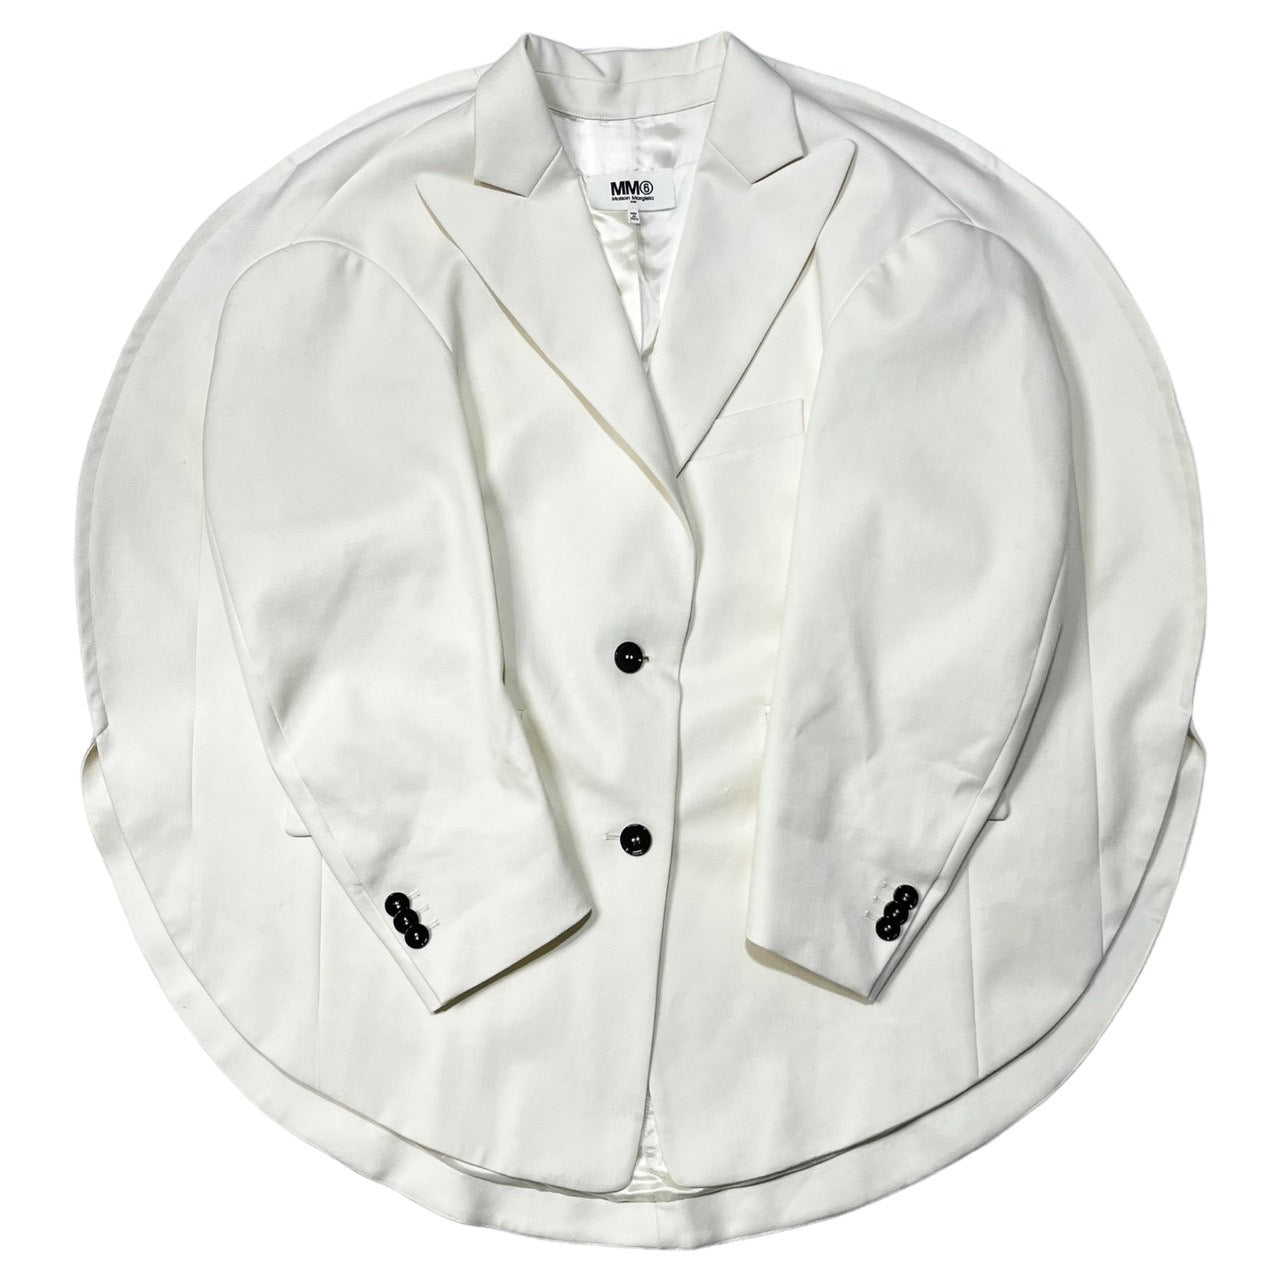 MM6 Maison Margiela(エムエムシックス) Oversized Circle Jacket サークル テーラード ジャケット 丸 円  S62BN0034 XS ホワイト/アイボリー